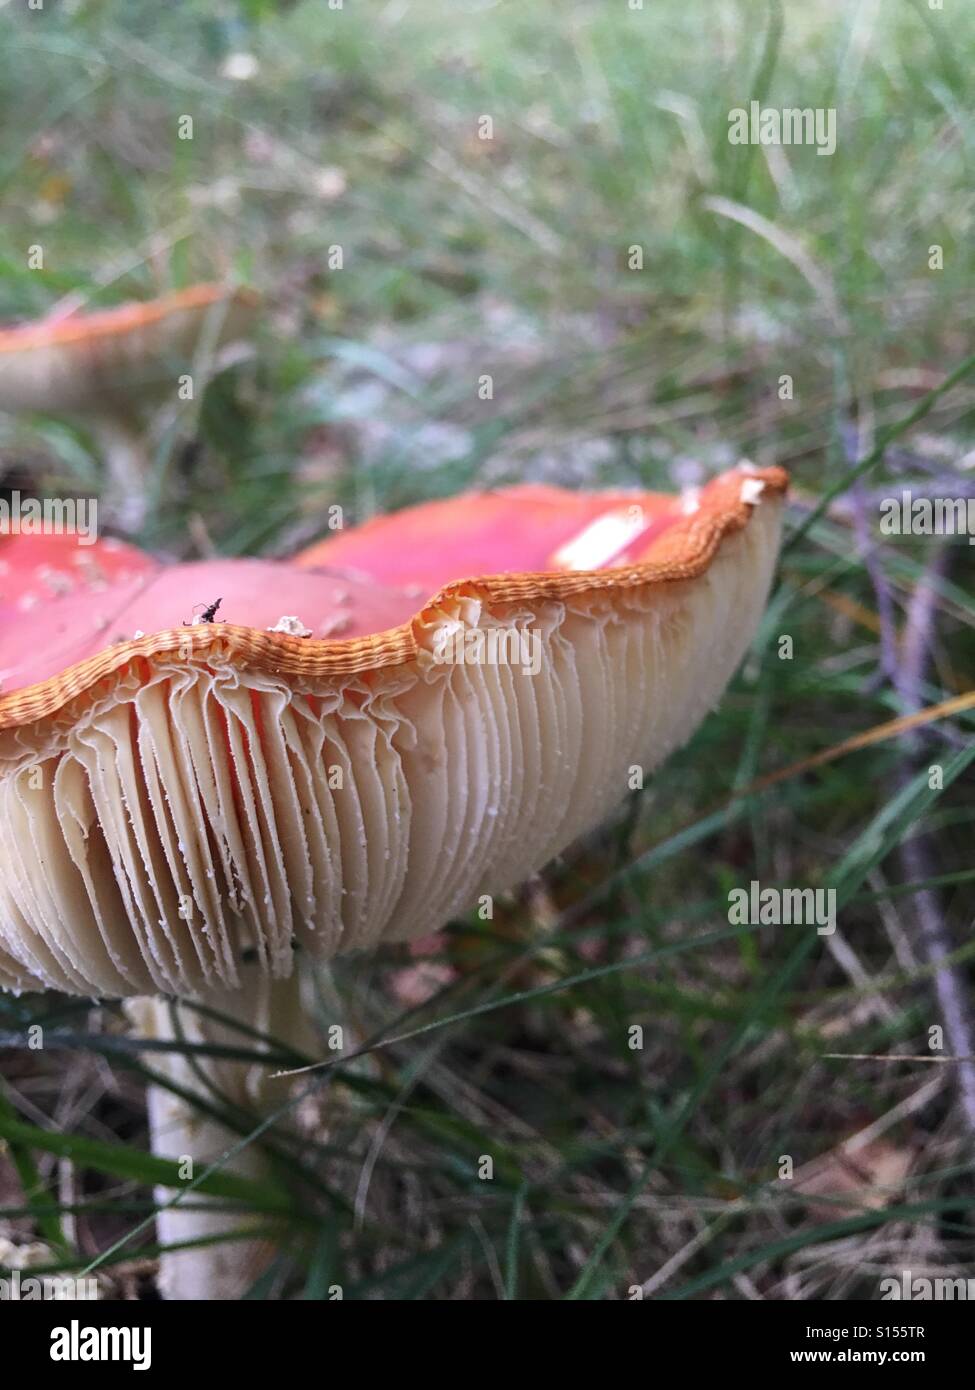 Red and white mushroom Stock Photo